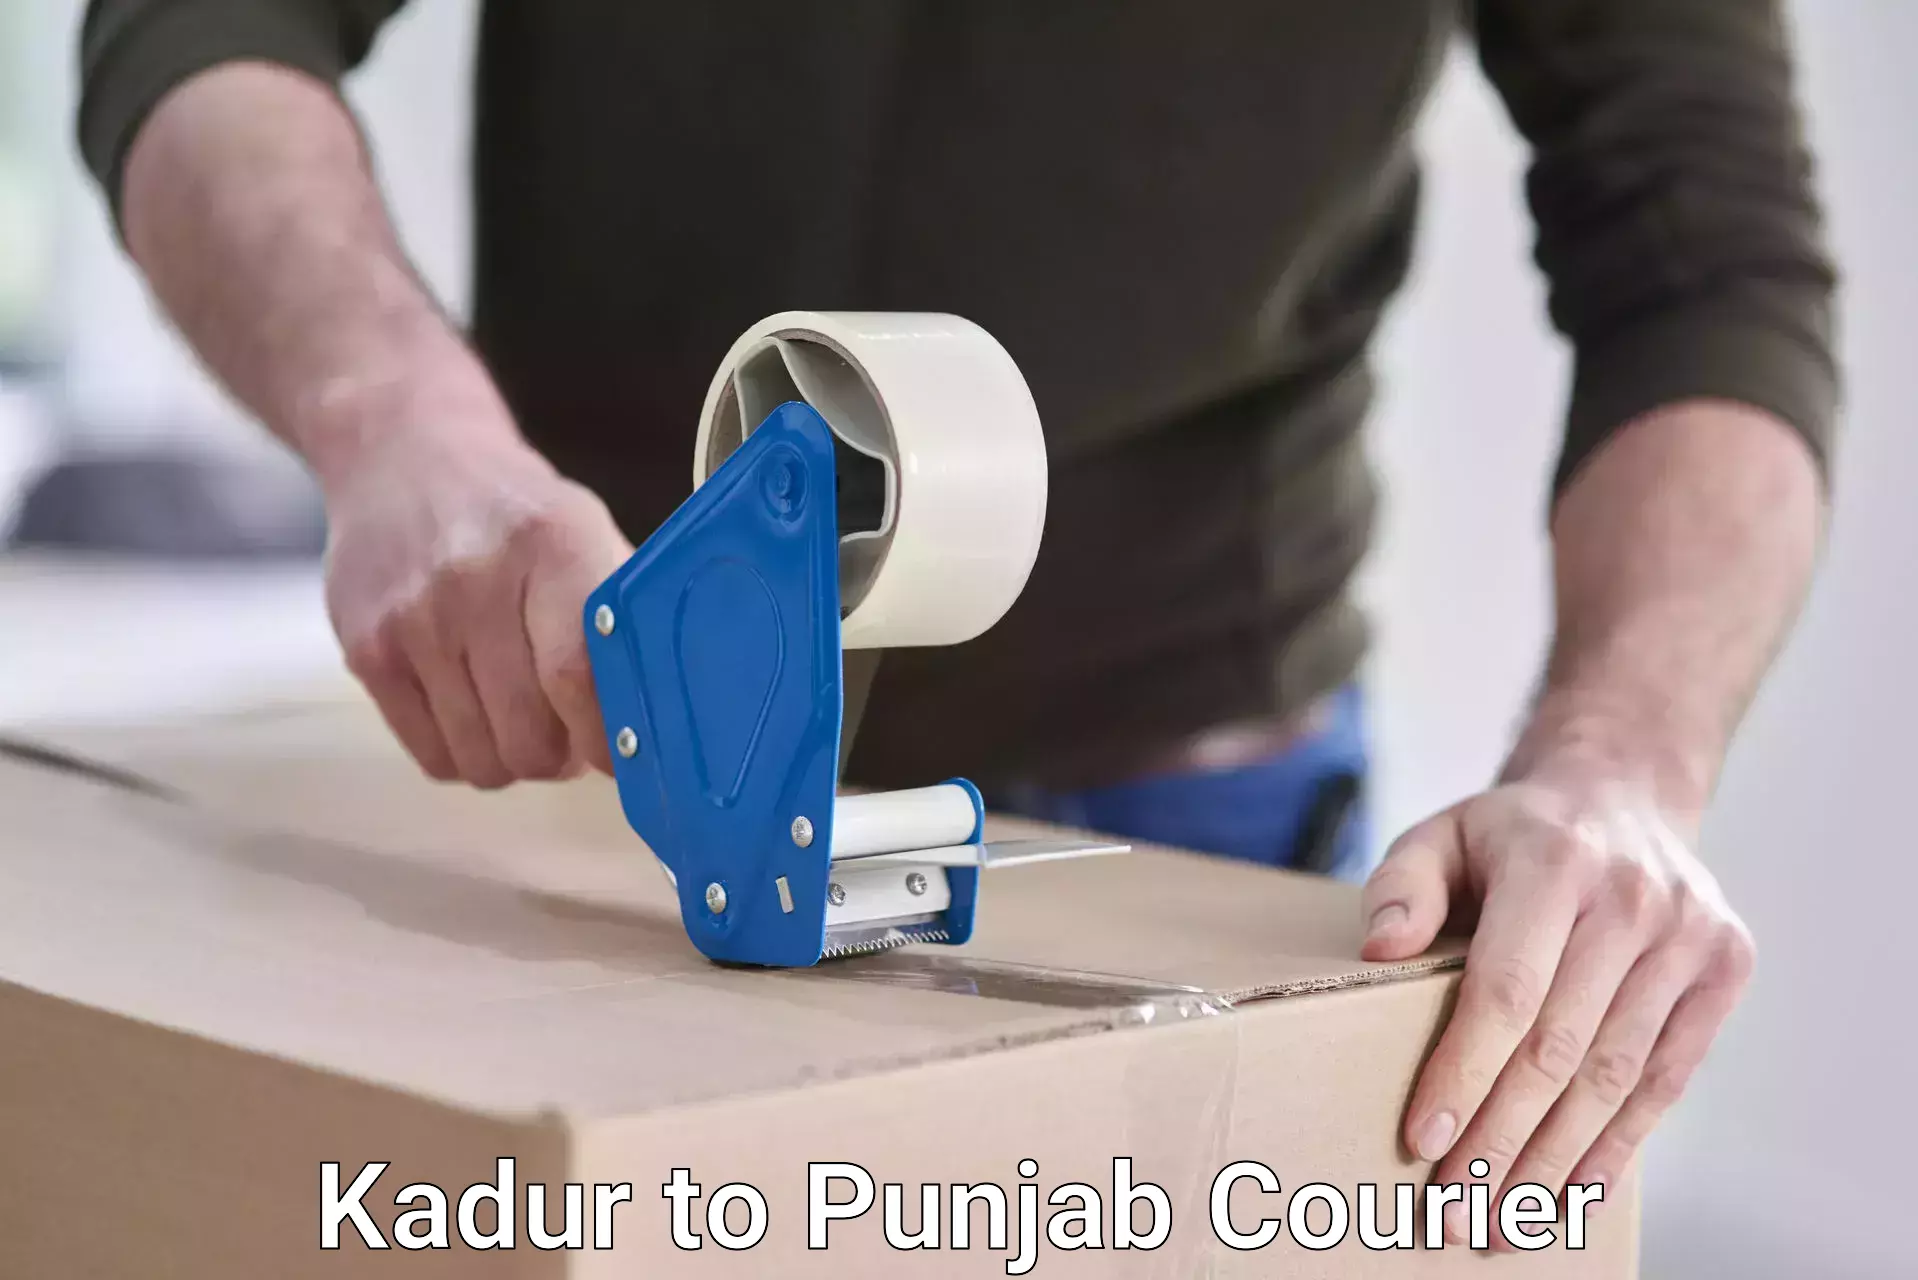 Bulk courier orders Kadur to Punjab